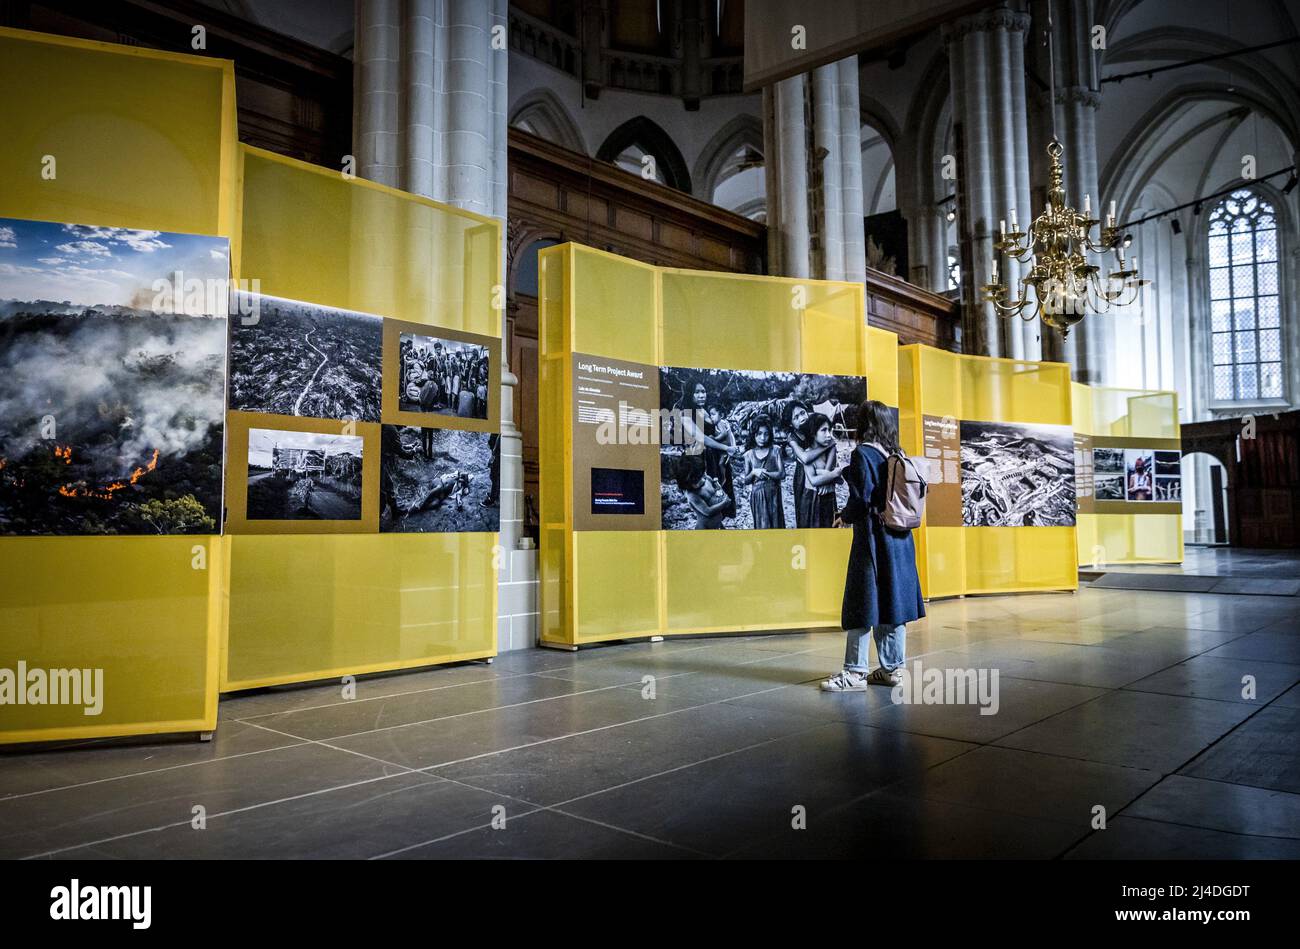 World press photo exhibition Banque de photographies et d'images à haute  résolution - Alamy